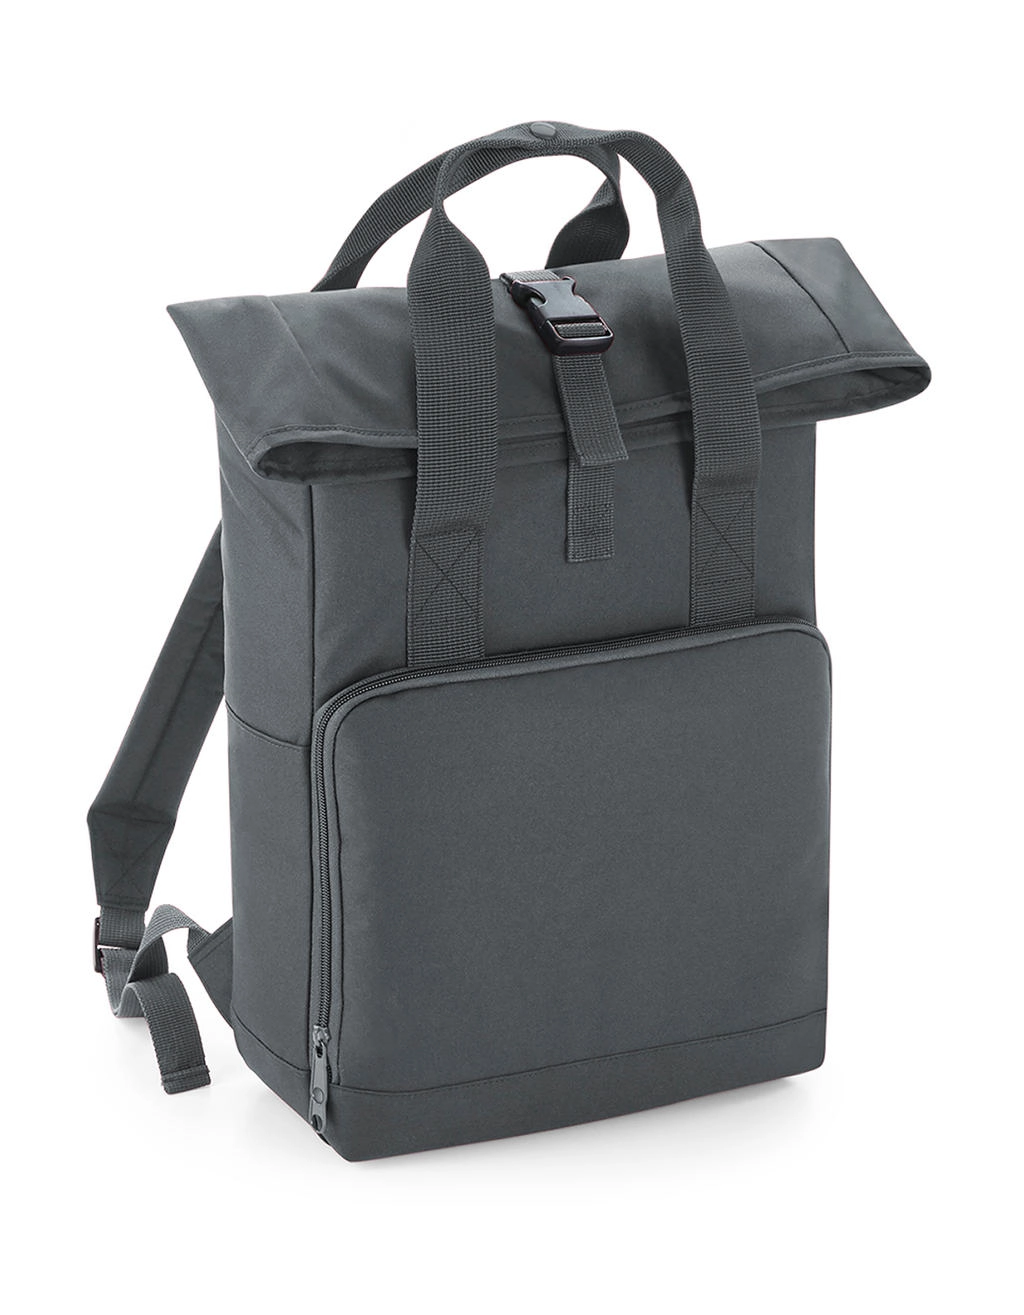 Twin Handle Roll-Top Backpack zum Besticken und Bedrucken in der Farbe Graphite Grey mit Ihren Logo, Schriftzug oder Motiv.